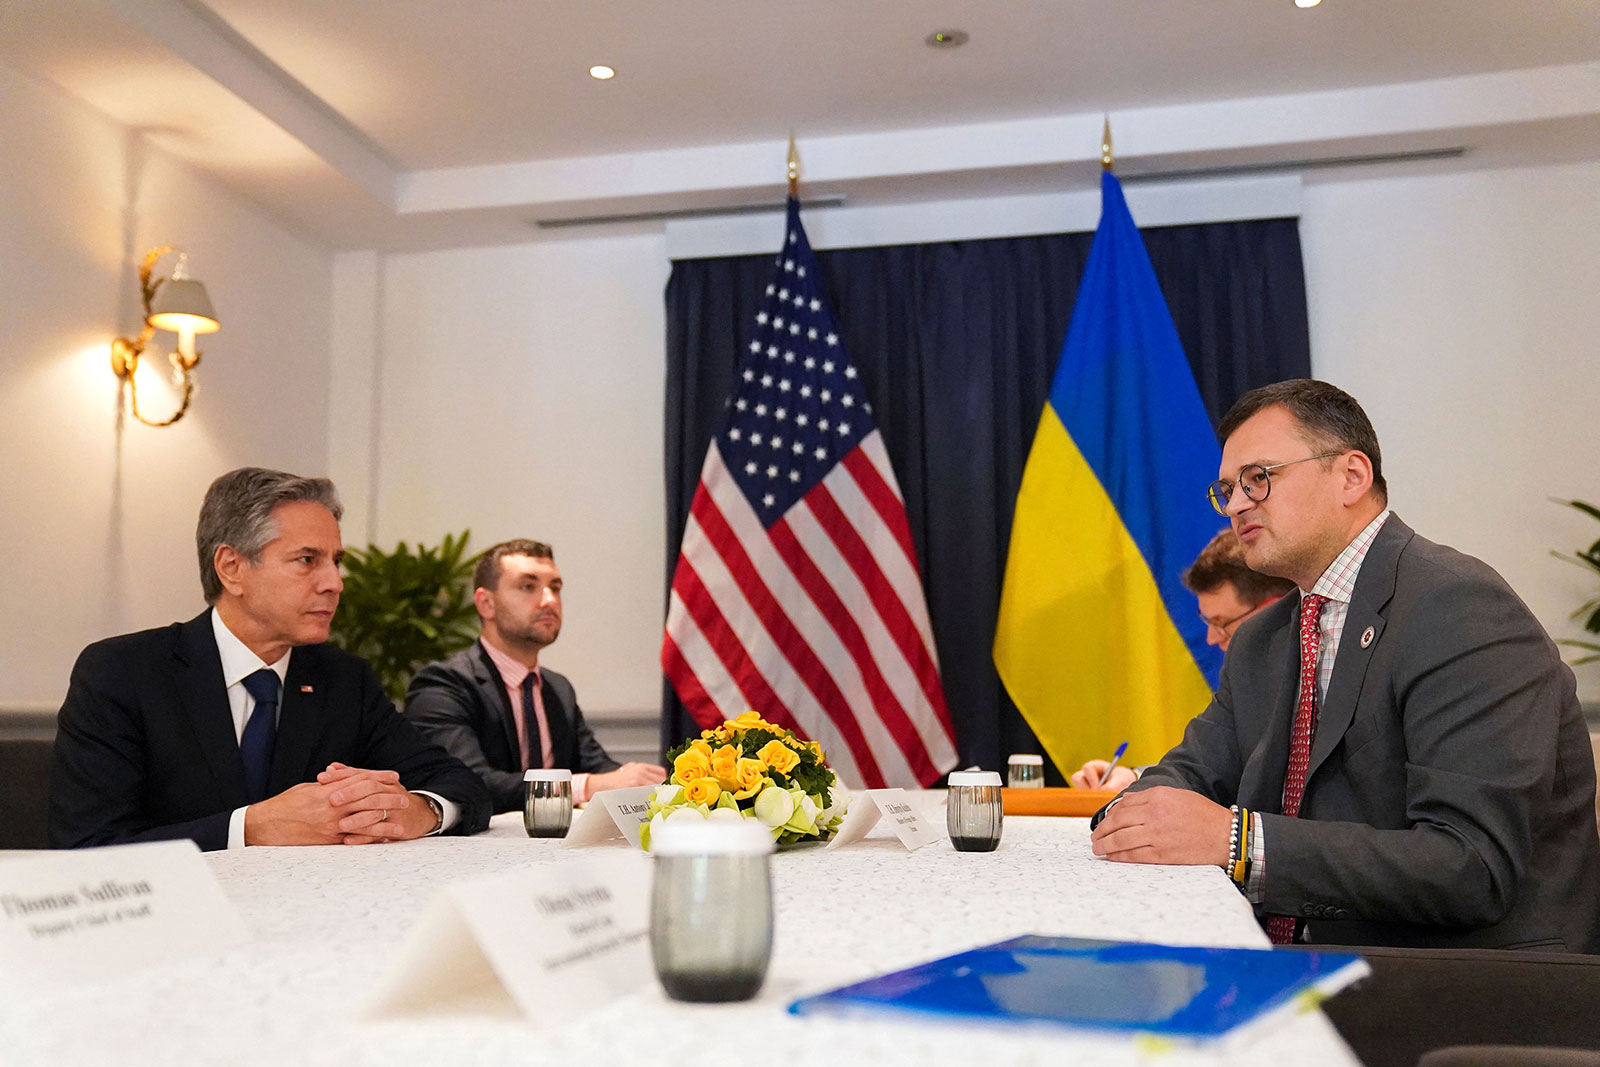 US Secretary of State Antony Blinken, left, meets Ukraine's Foreign Minister Dmytro Kuleba, right, on November 12.